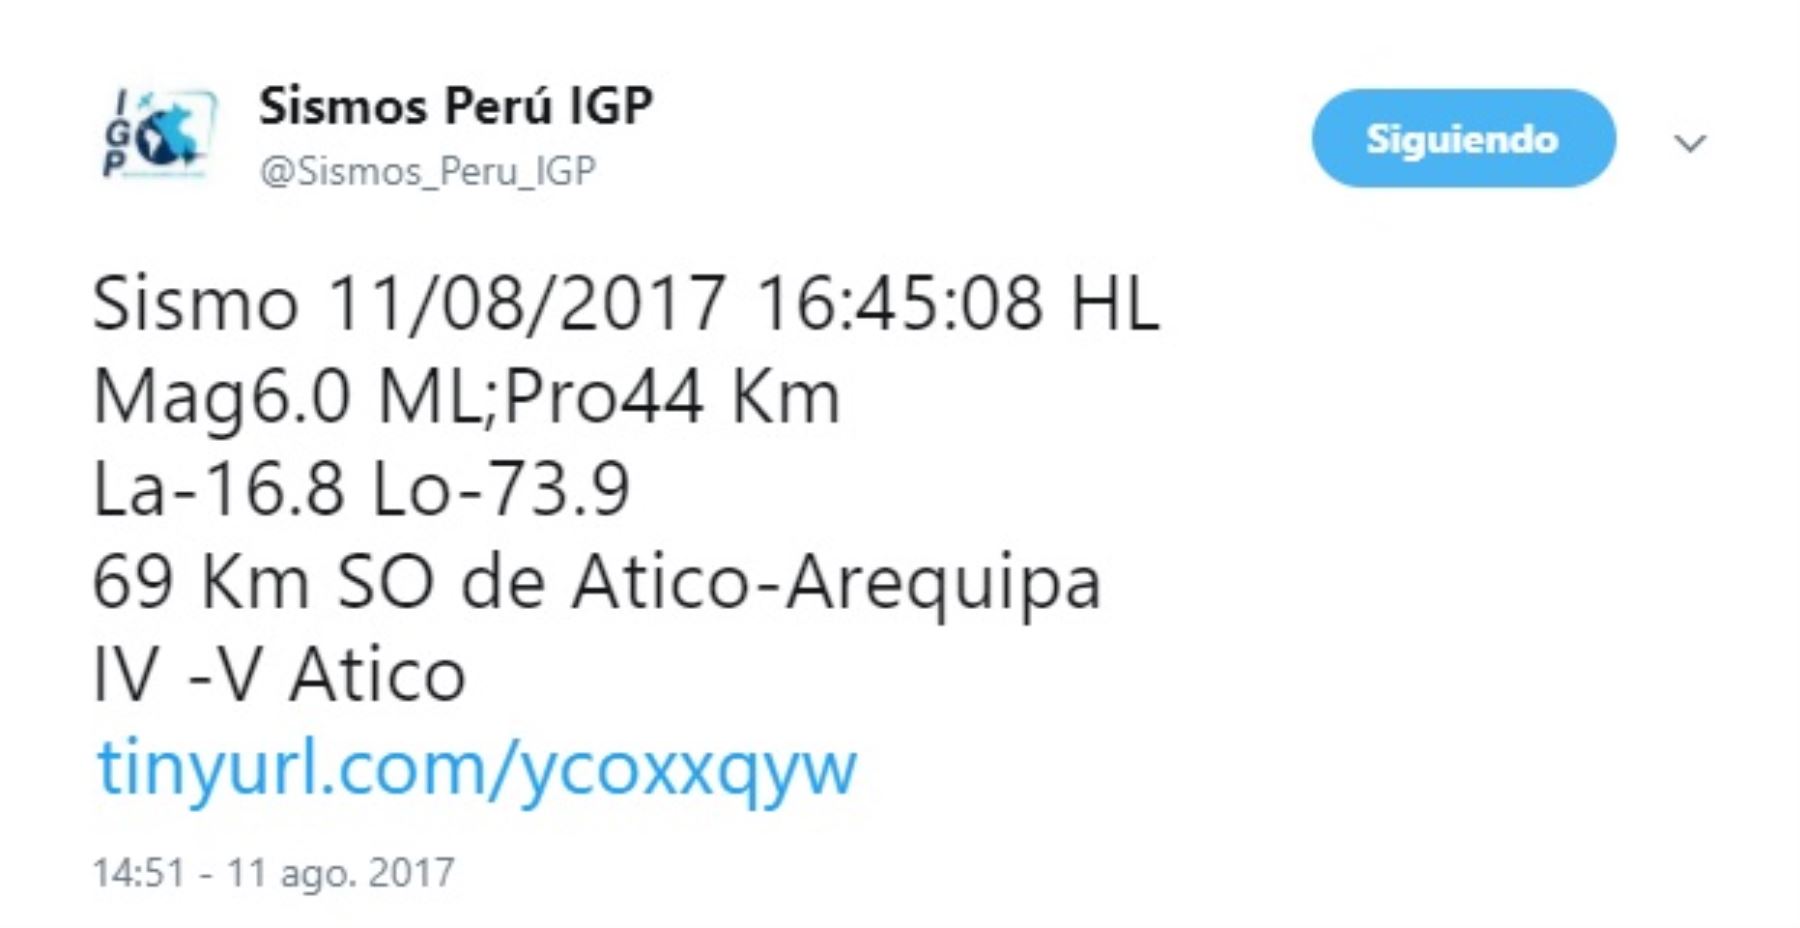 Un sismo de 6 grados en la escala de Richter alertó a la población arequipeña, aunque de momento no se reportan daños humanos ni materiales, informó el Instituto Geofísico del Perú (IGP).